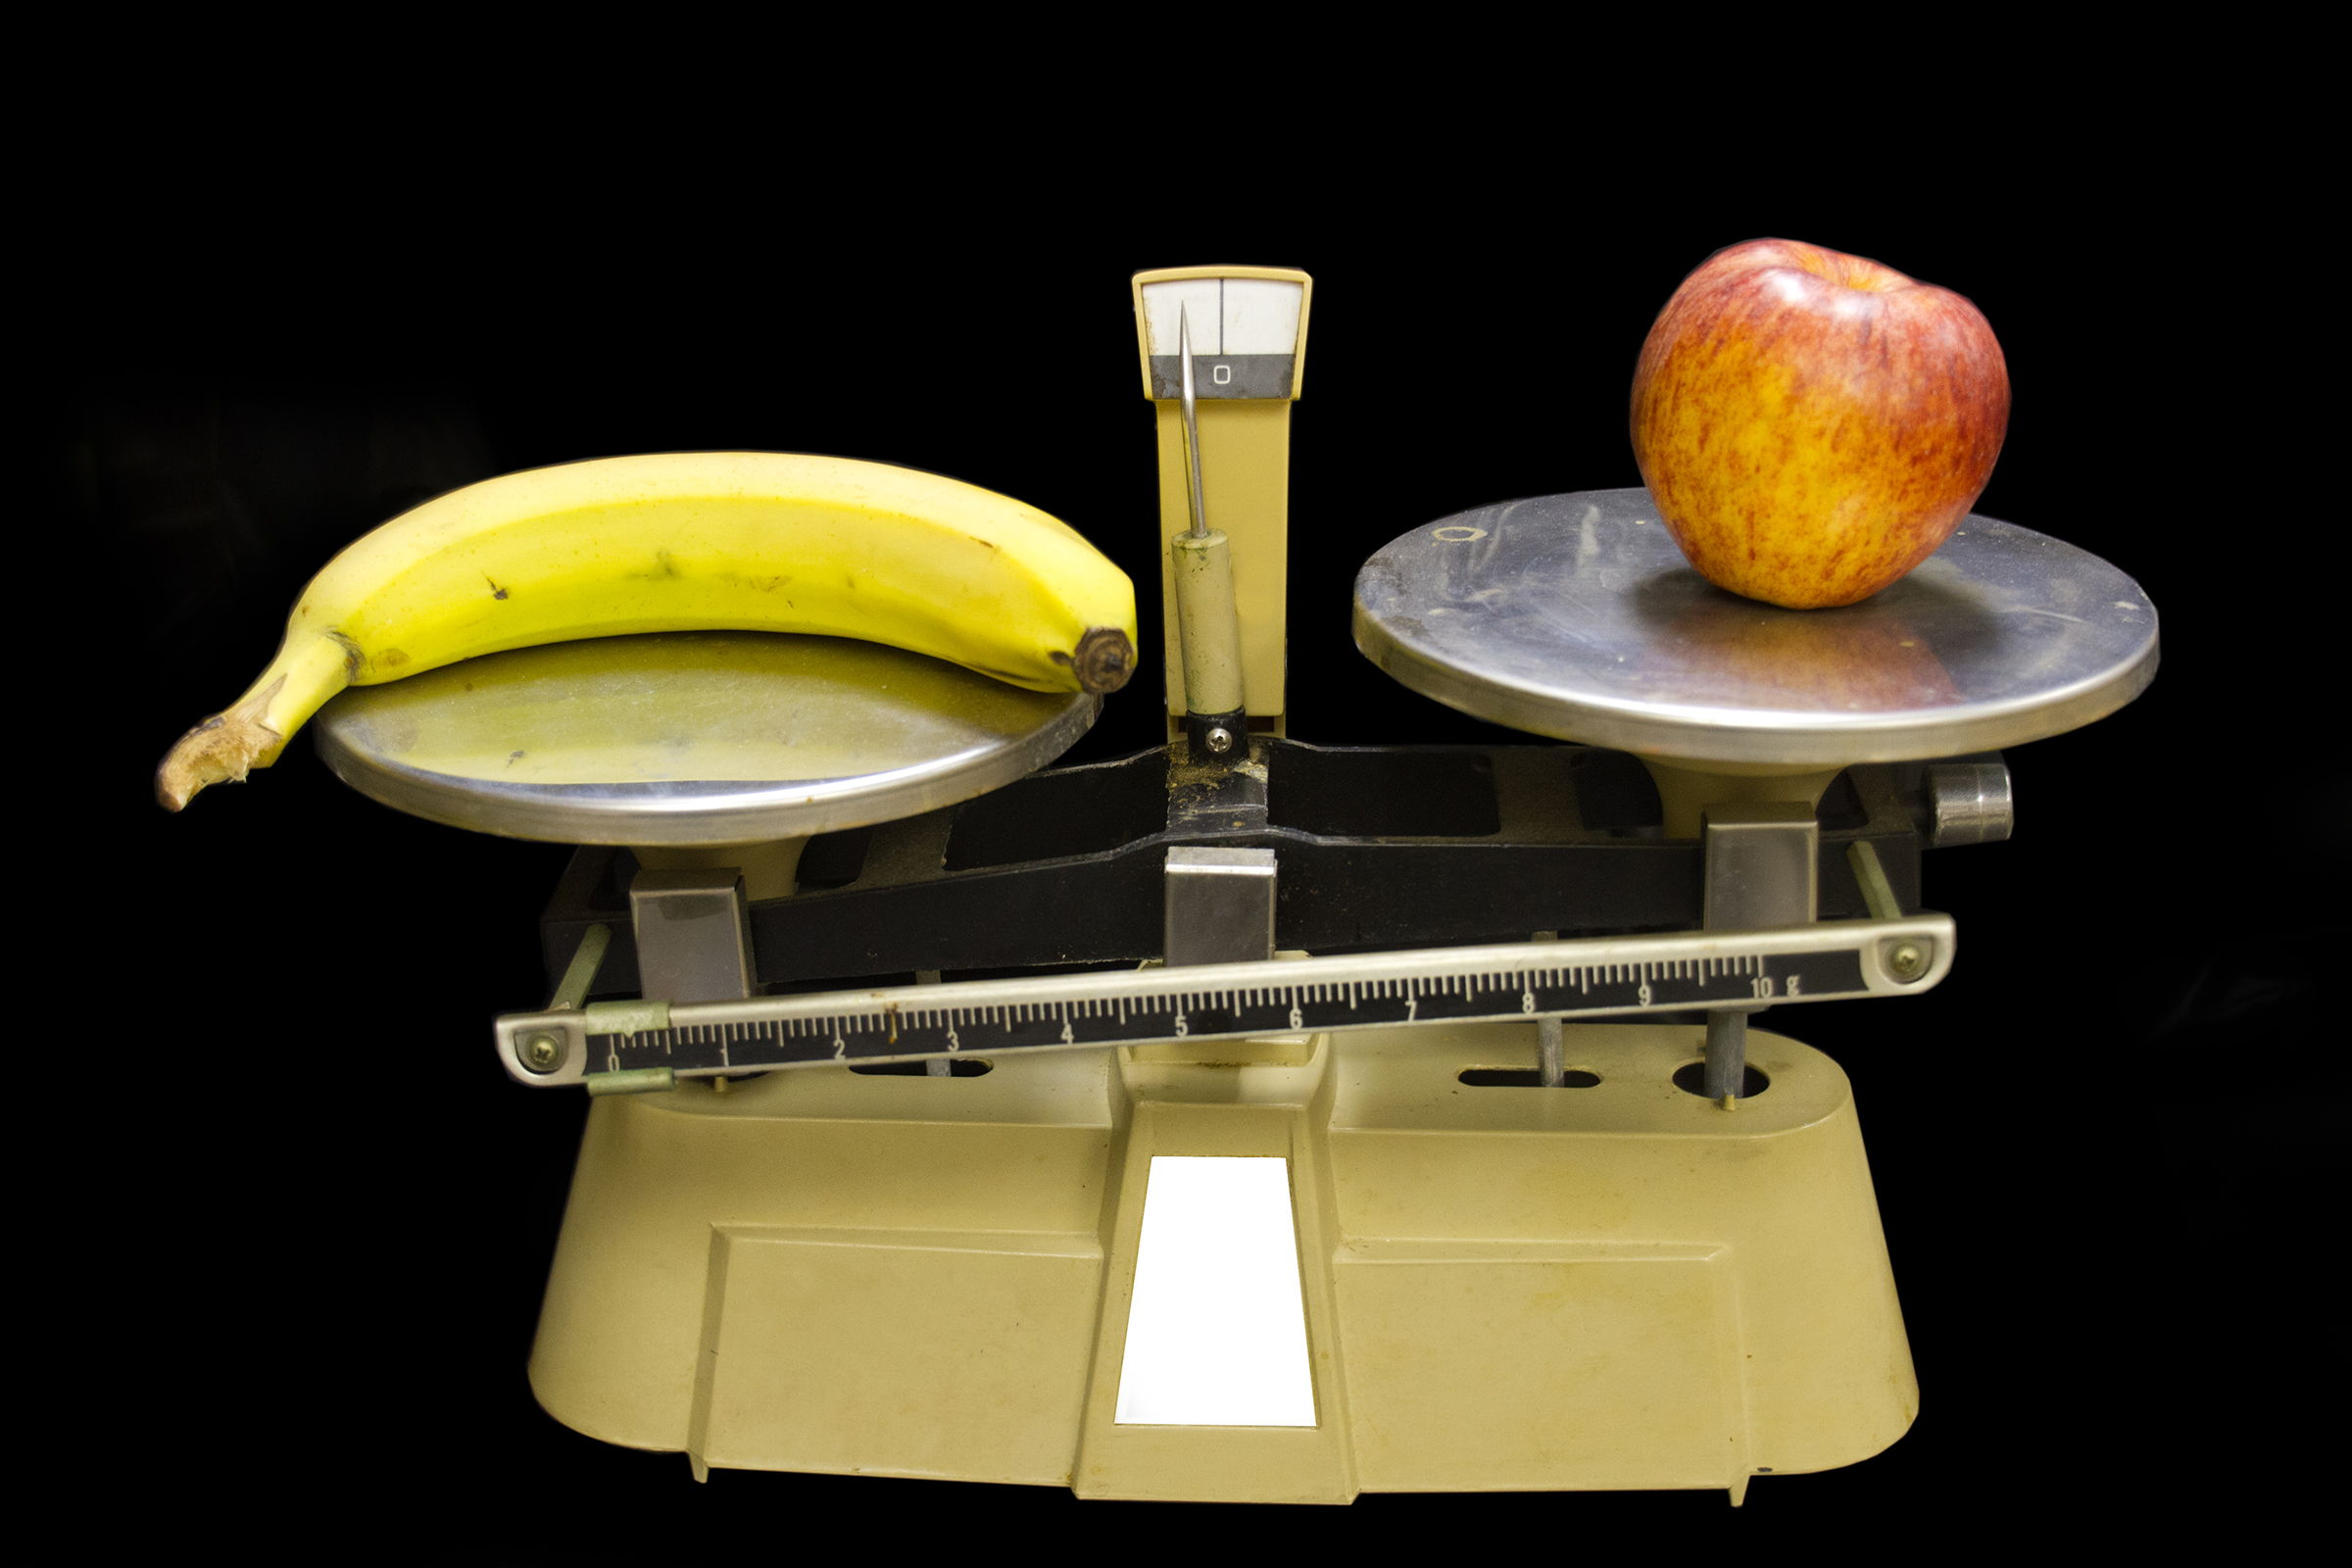 банан и яблоко на весах